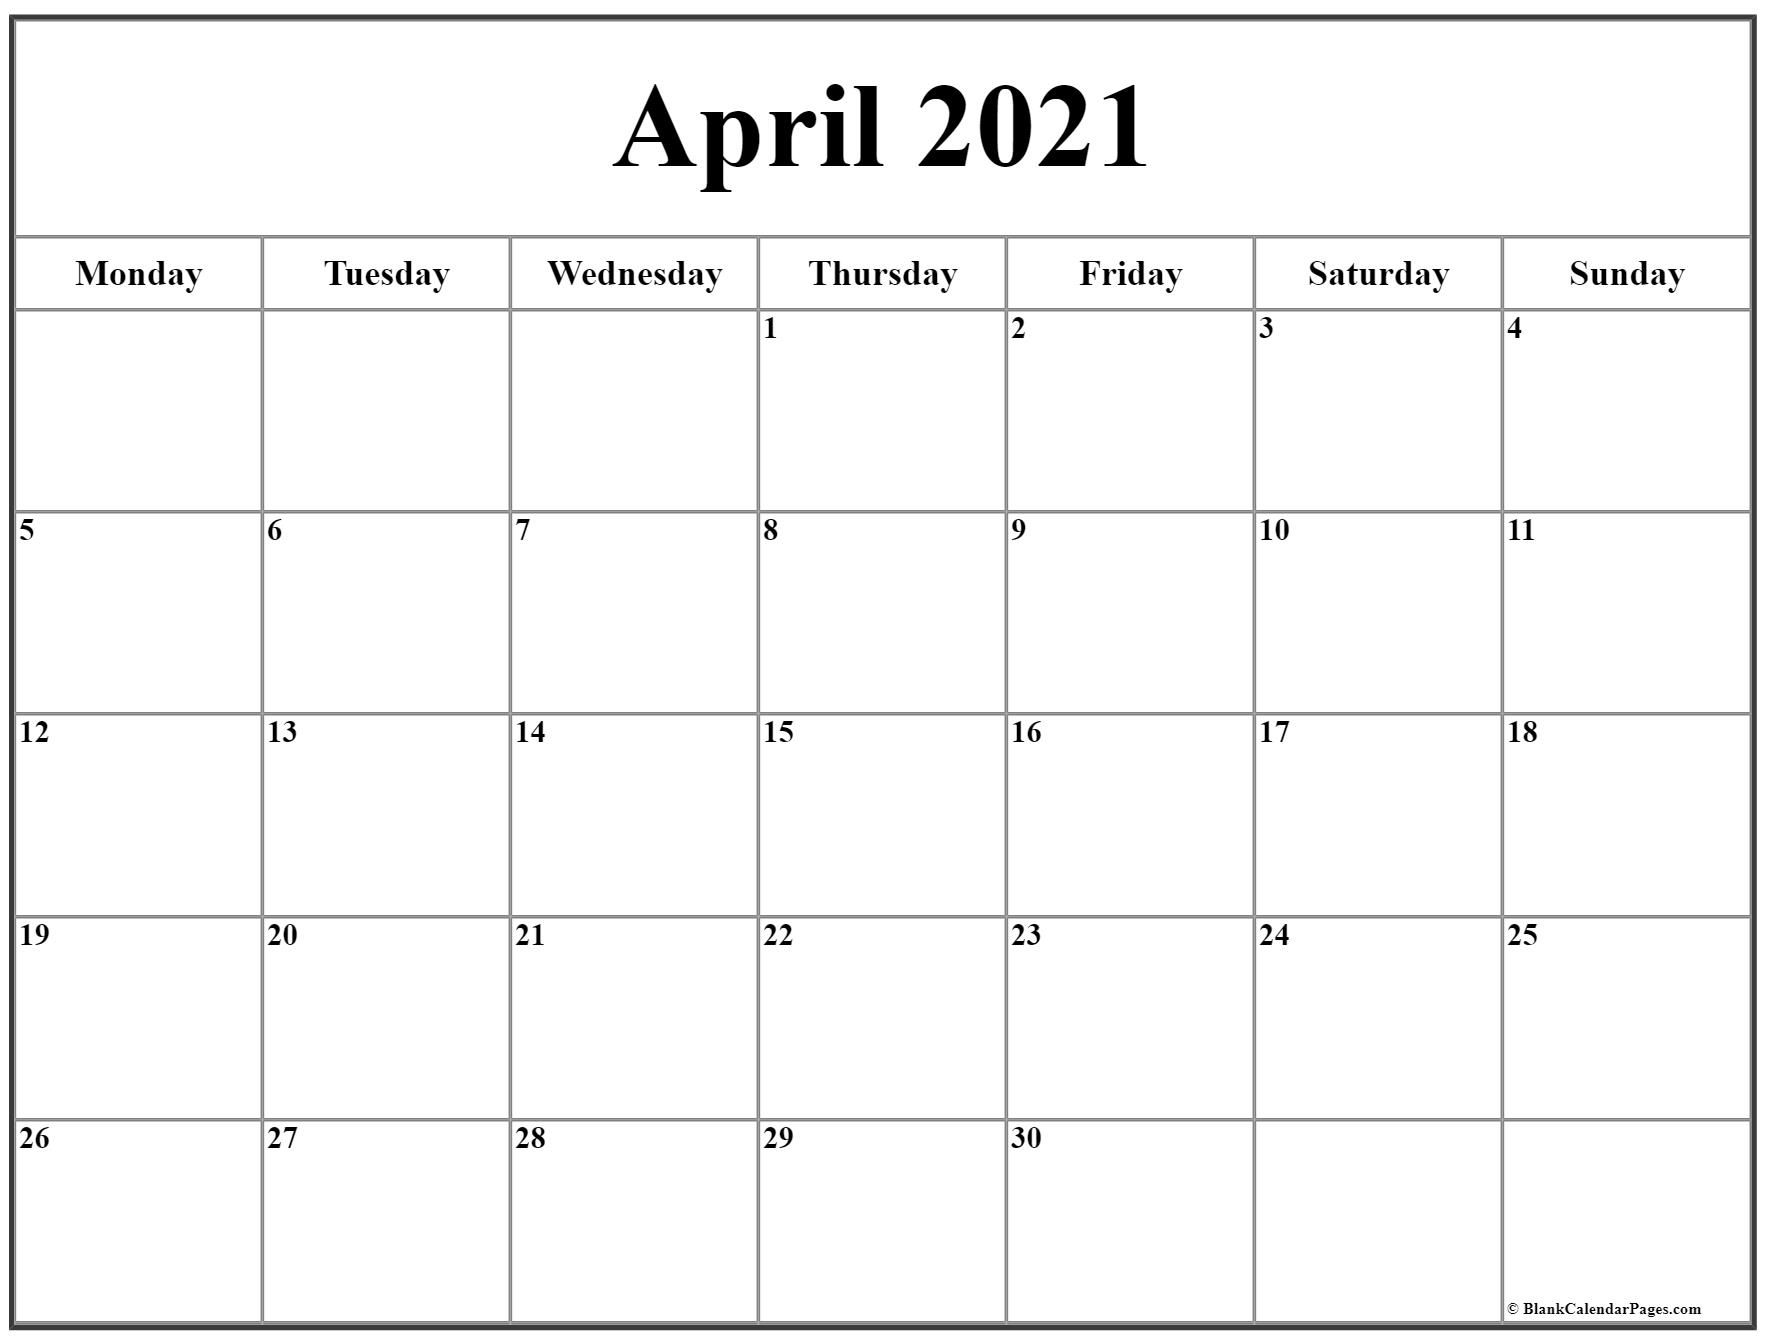 April 2021 Calendar Starting Monday | Academic Calendar